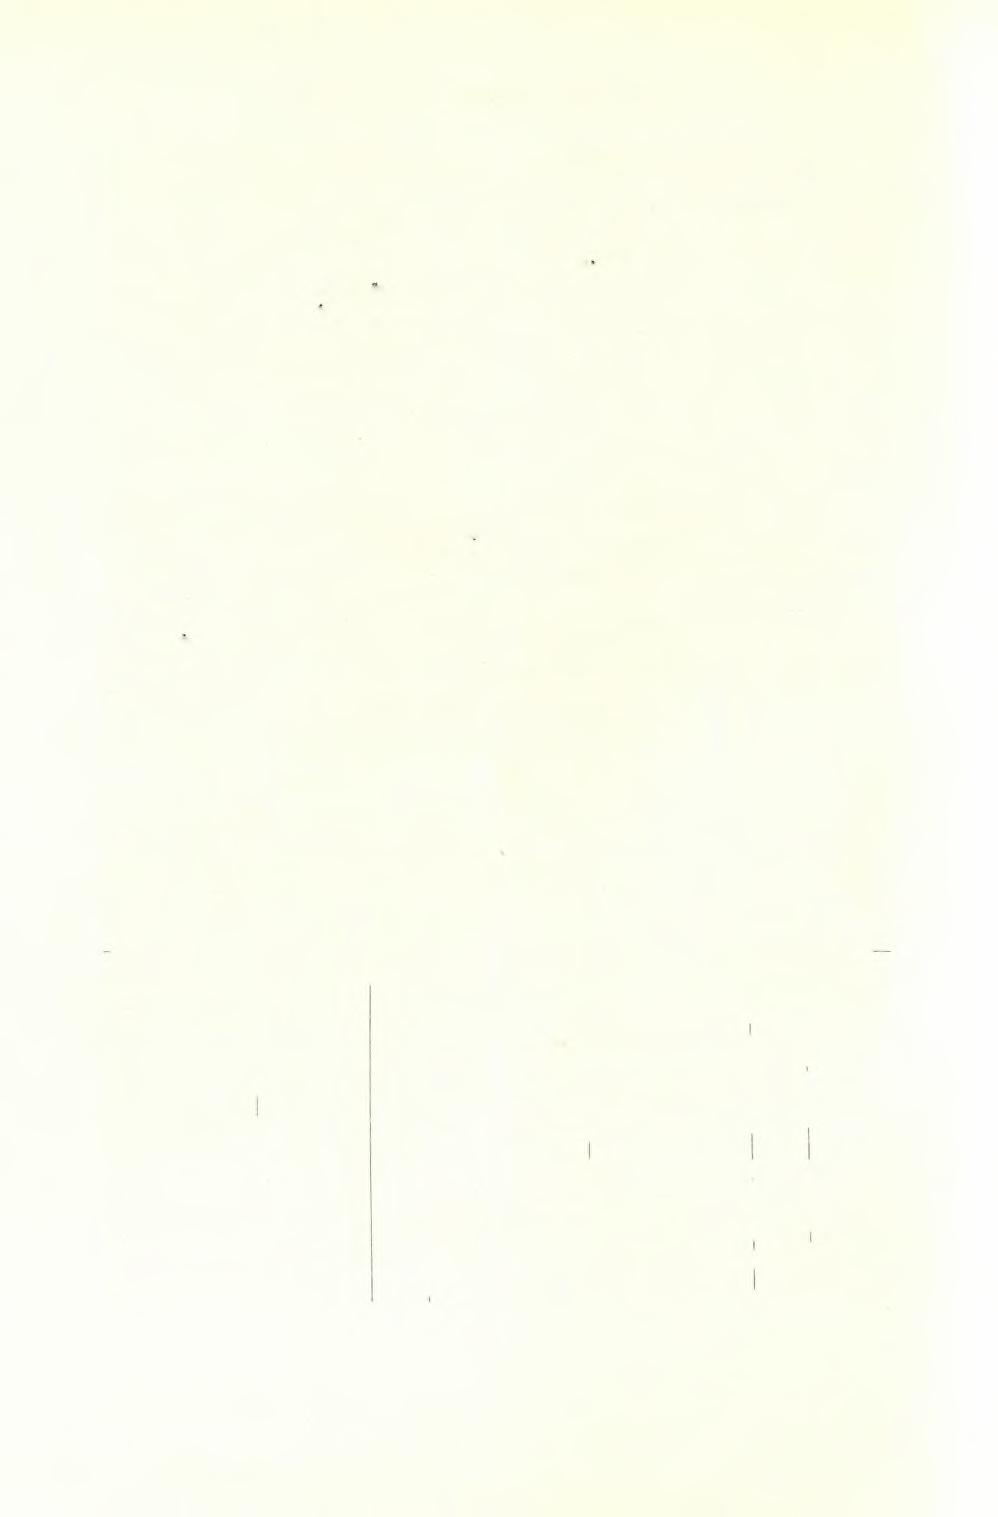 202 ΑΡΧΑΙΟΛΟΓΙΚΟΝ ΔΕΛΤΙΟΝ 19 (1964) : ΧΡΟΝΙΚΑ λαιμός. Ύψ. 0,31 μ. Έκ κατασχέσεως. Άρ. 69.